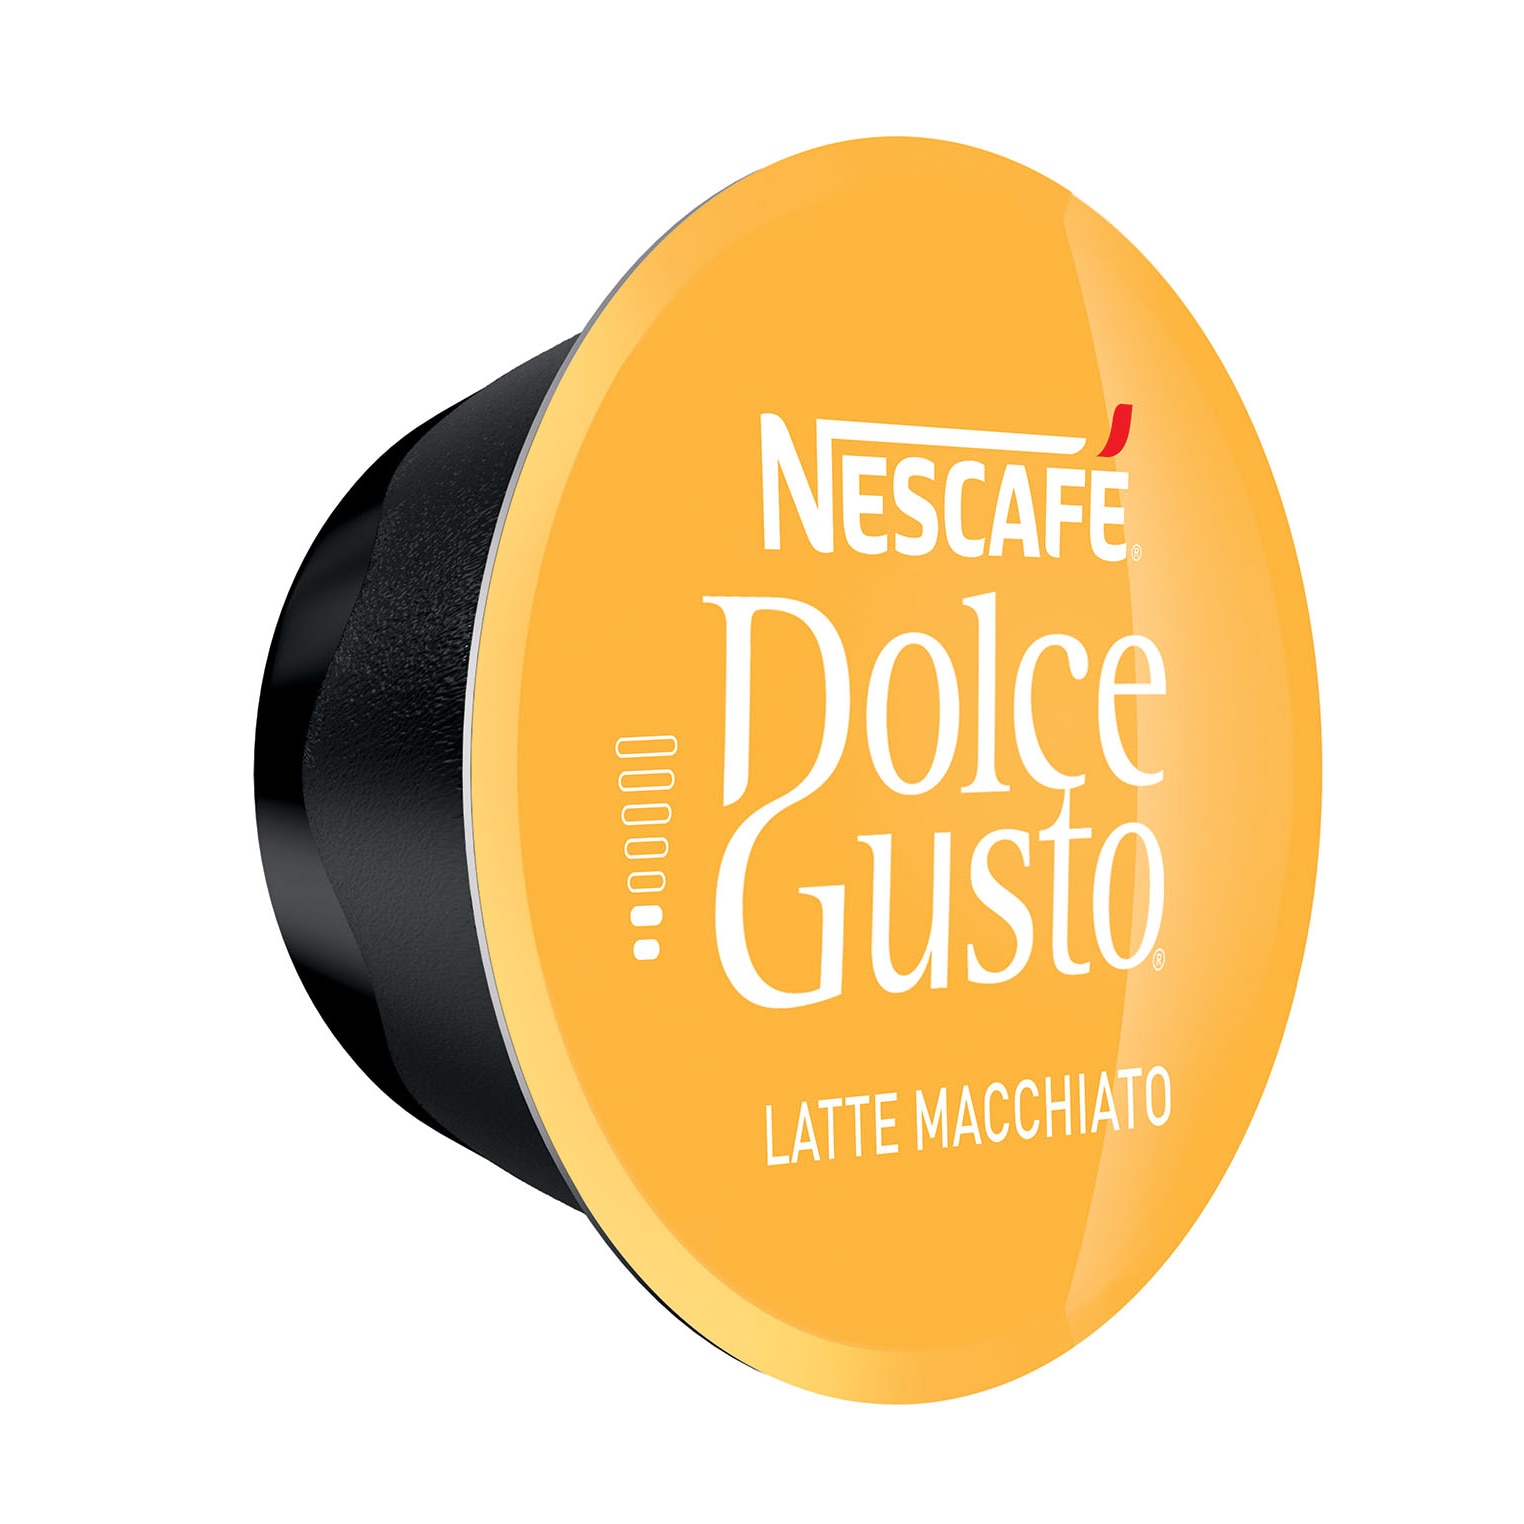 Какие капсулы dolce gusto. Капсулы Dolce gusto Cappuccino. Nescafe Dolce gusto капсулы. Капсулы для кофемашины Нескафе Дольче густо. Nescafe Dolce gusto кофе Cappuccino 16 капс в капсулах.